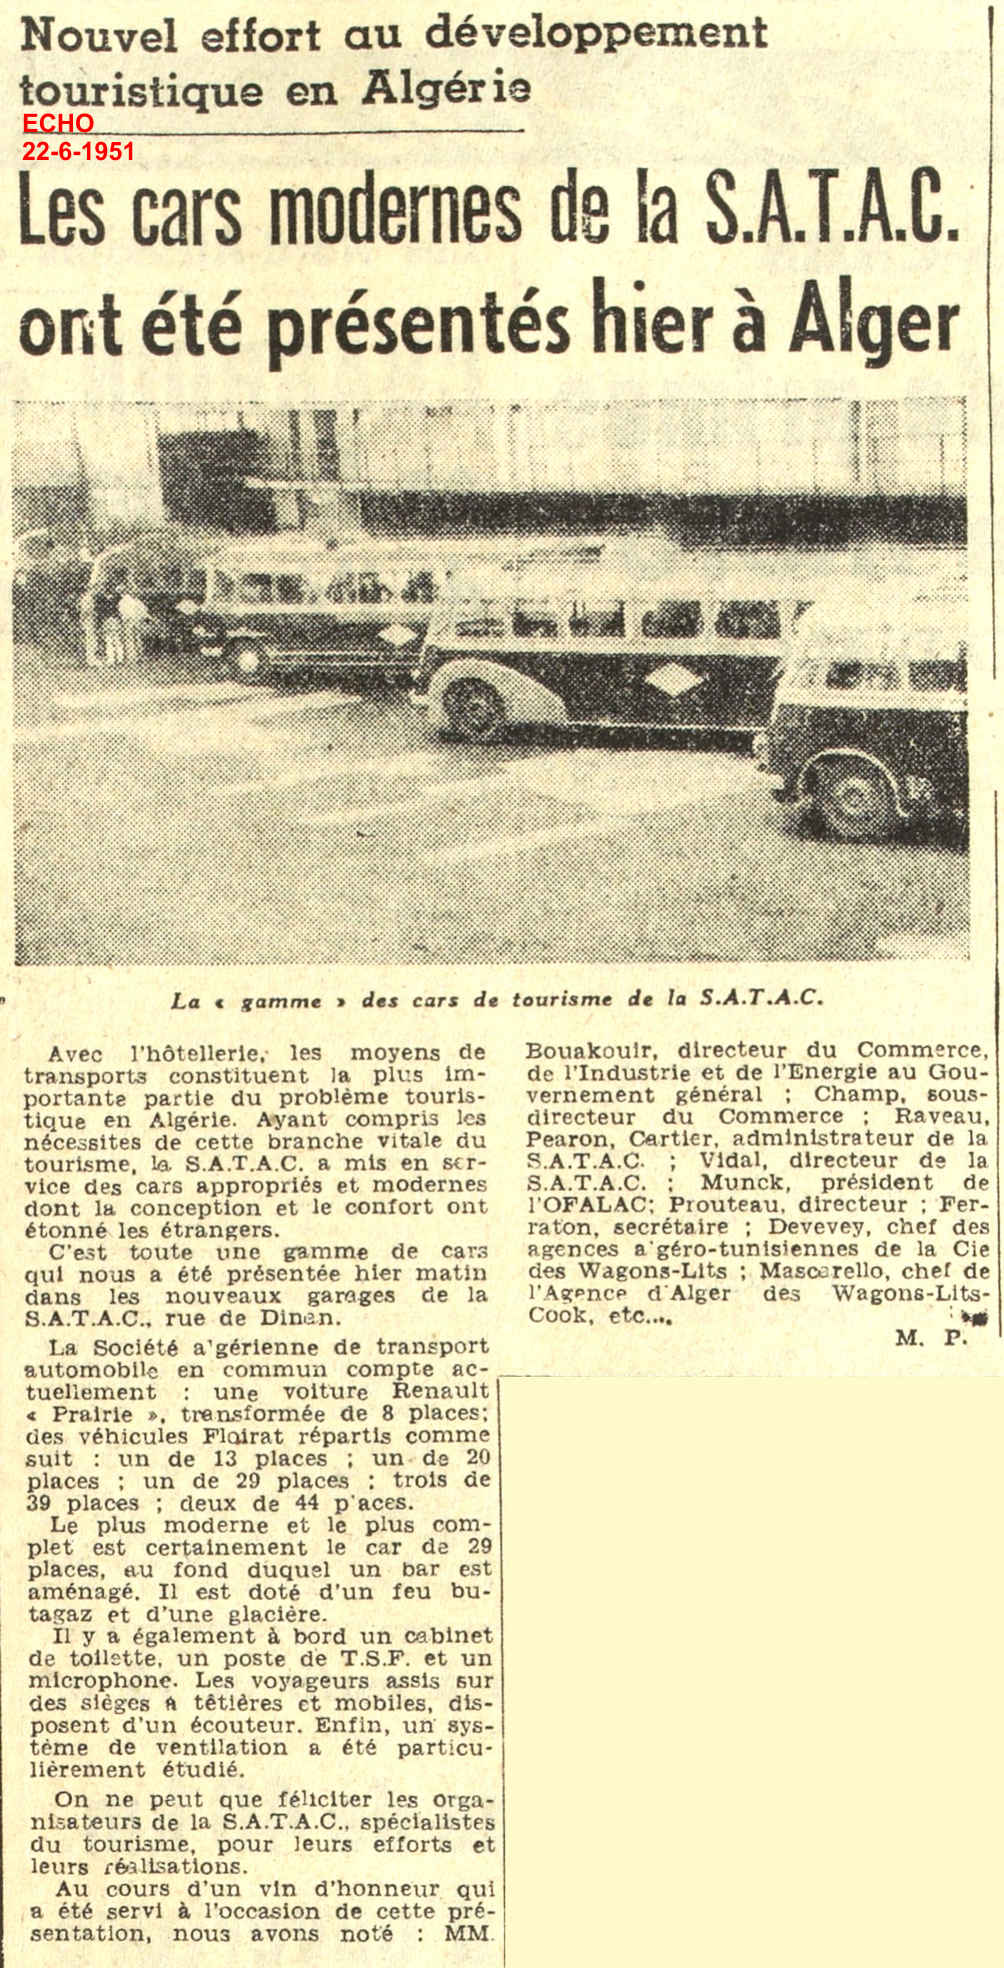 Les cars modernes de la S.A.T.A.C. ont été présentés hier à Alger 